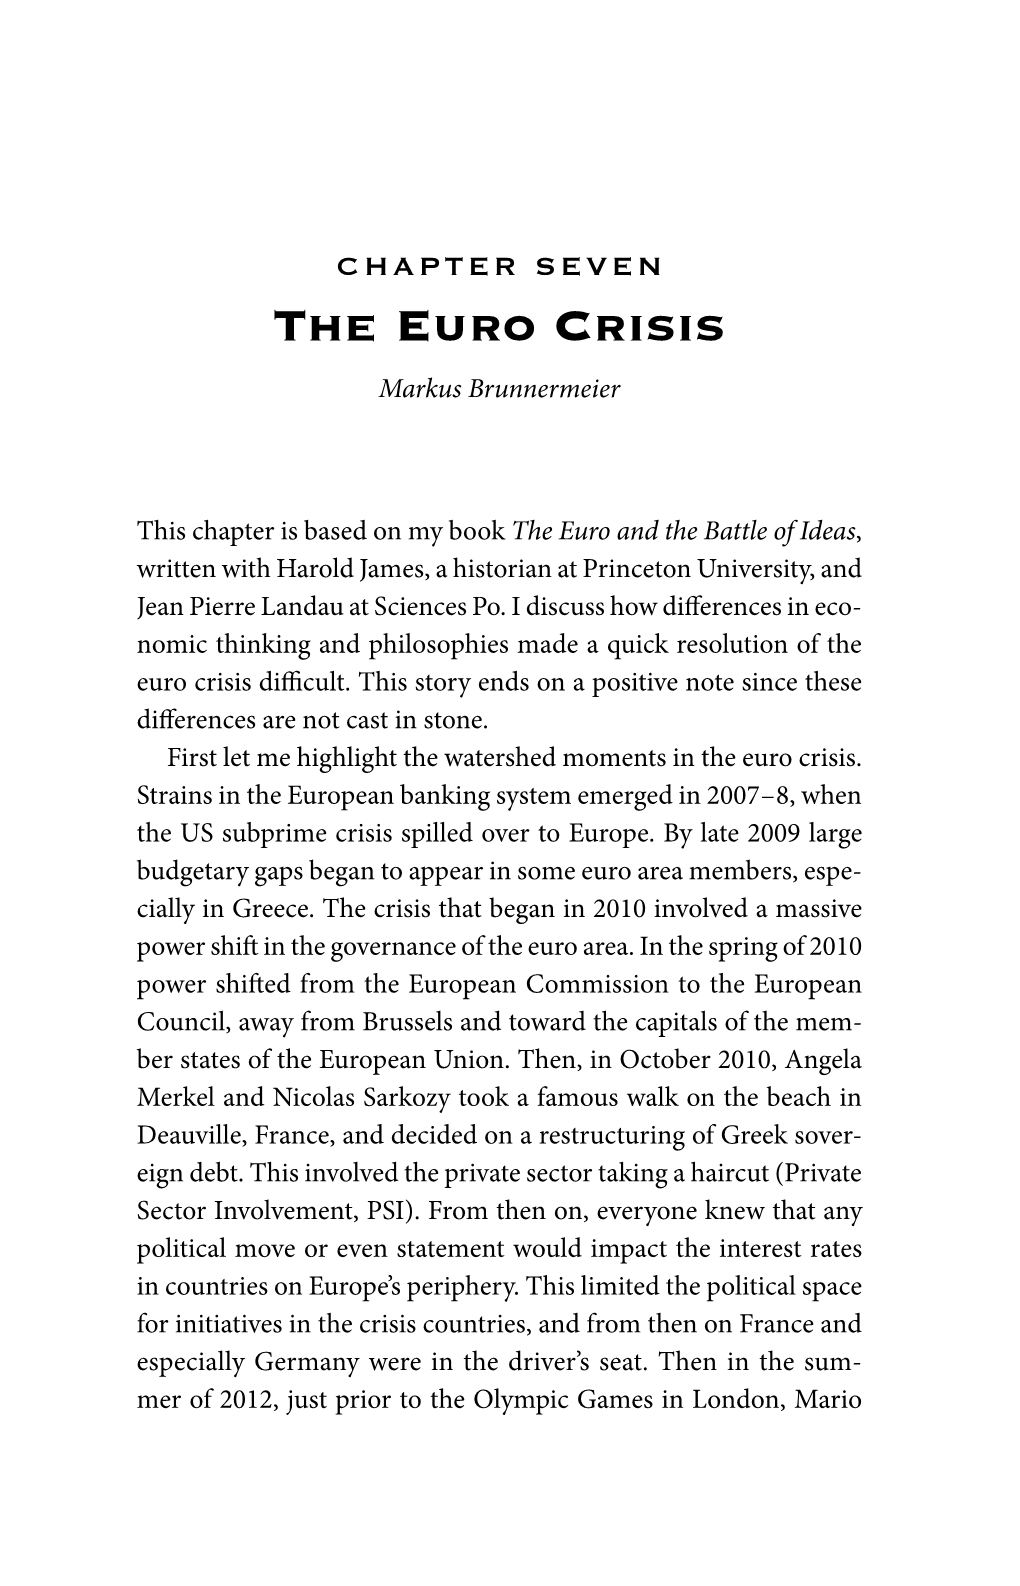 The Euro Crisis Markus Brunnermeier